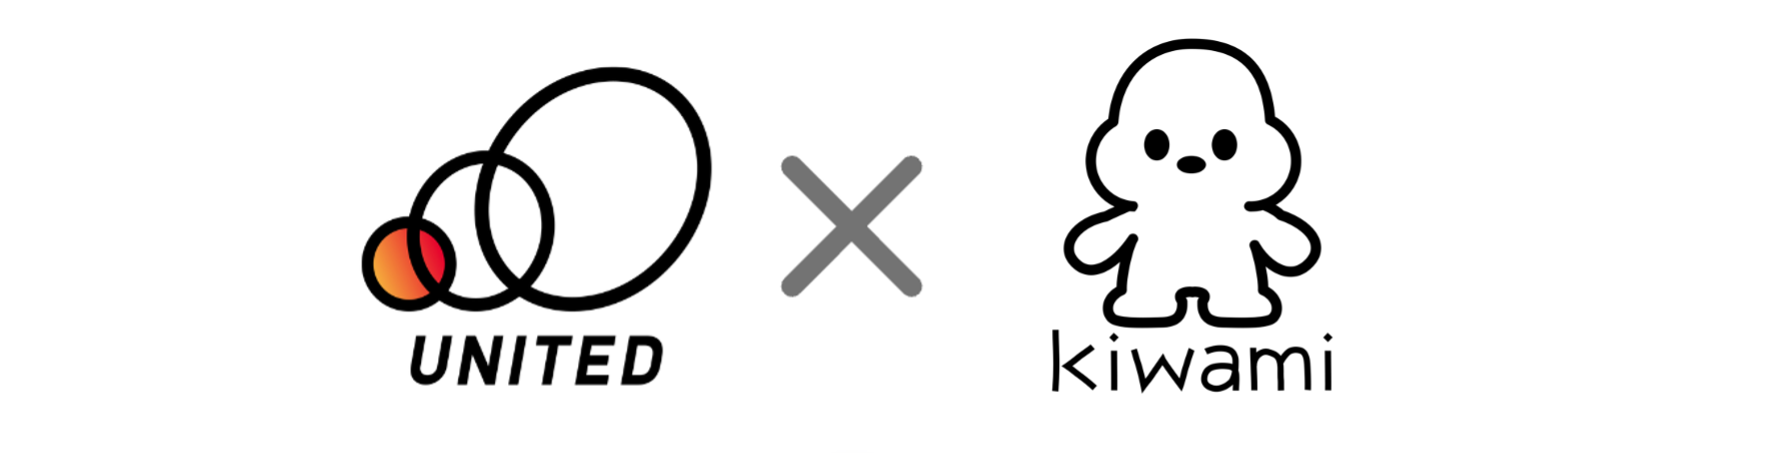 ユナイテッド、バーチャルキャラクターによる遠隔接客ソリューションを提供する「株式会社kiwami」に出資